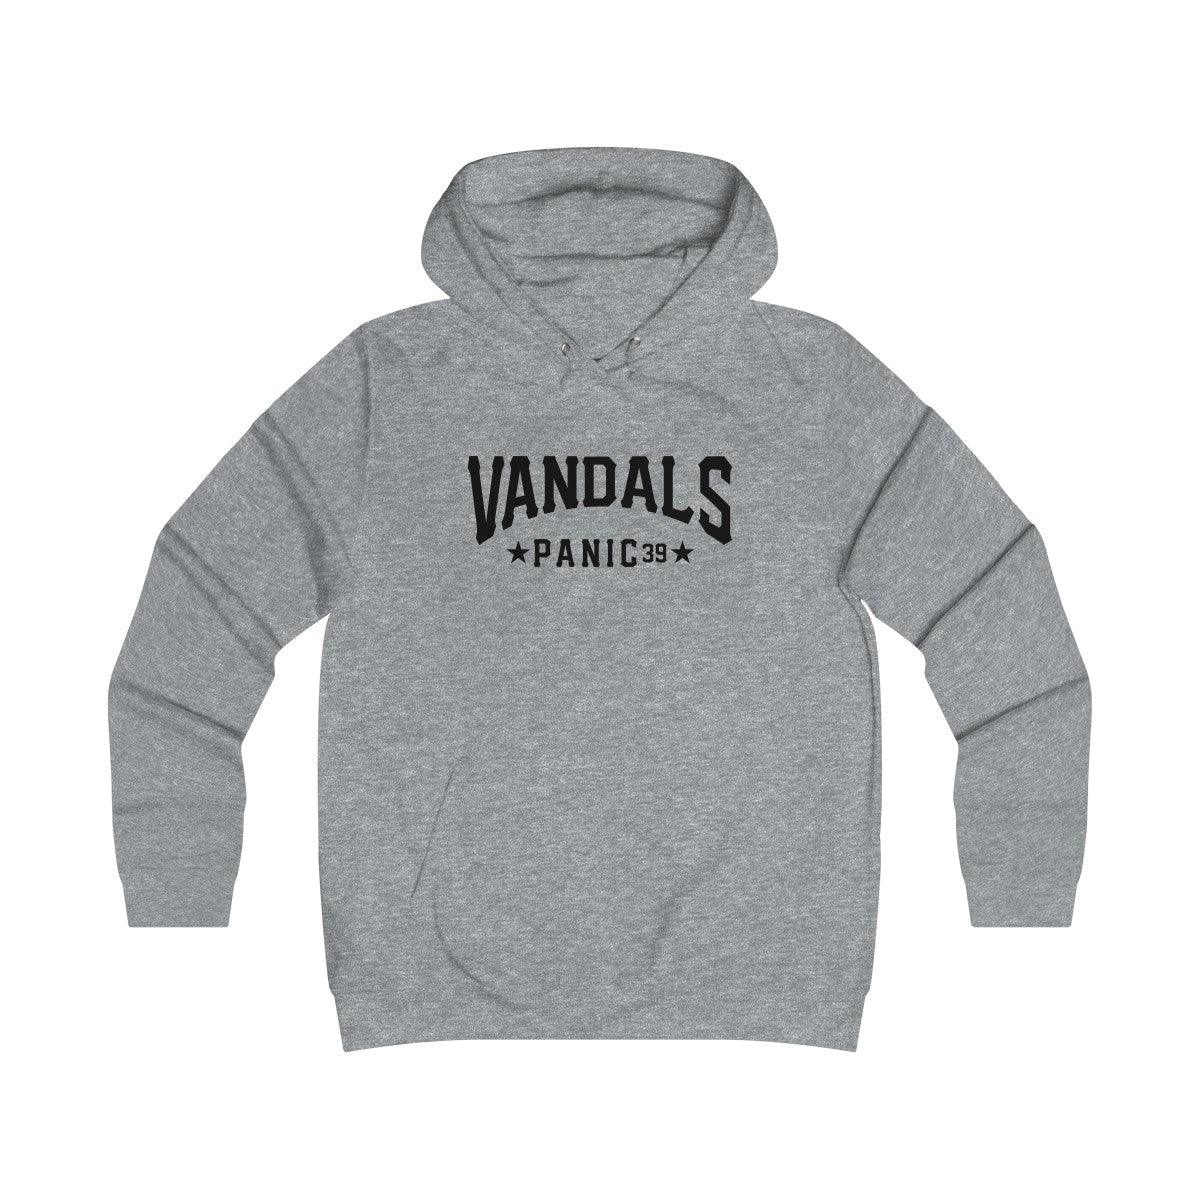 Panic 39 Vandals Juniors Hoodie Sweatshirt - Black Print - concreteaddicts